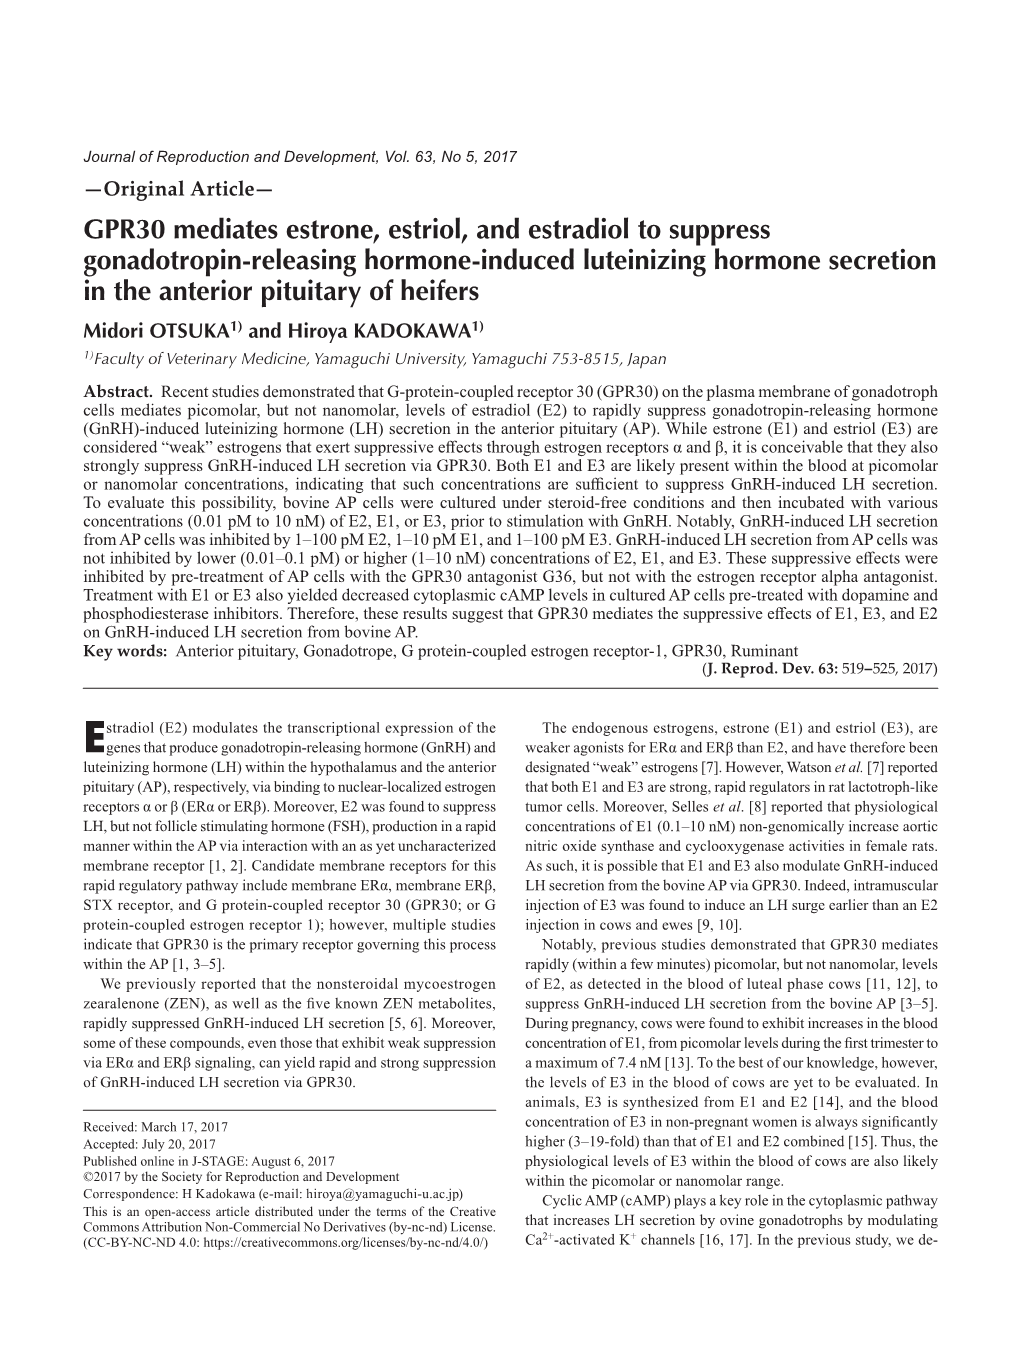 GPR30 Mediates Estrone, Estriol, and Estradiol to Suppress Gonadotropin